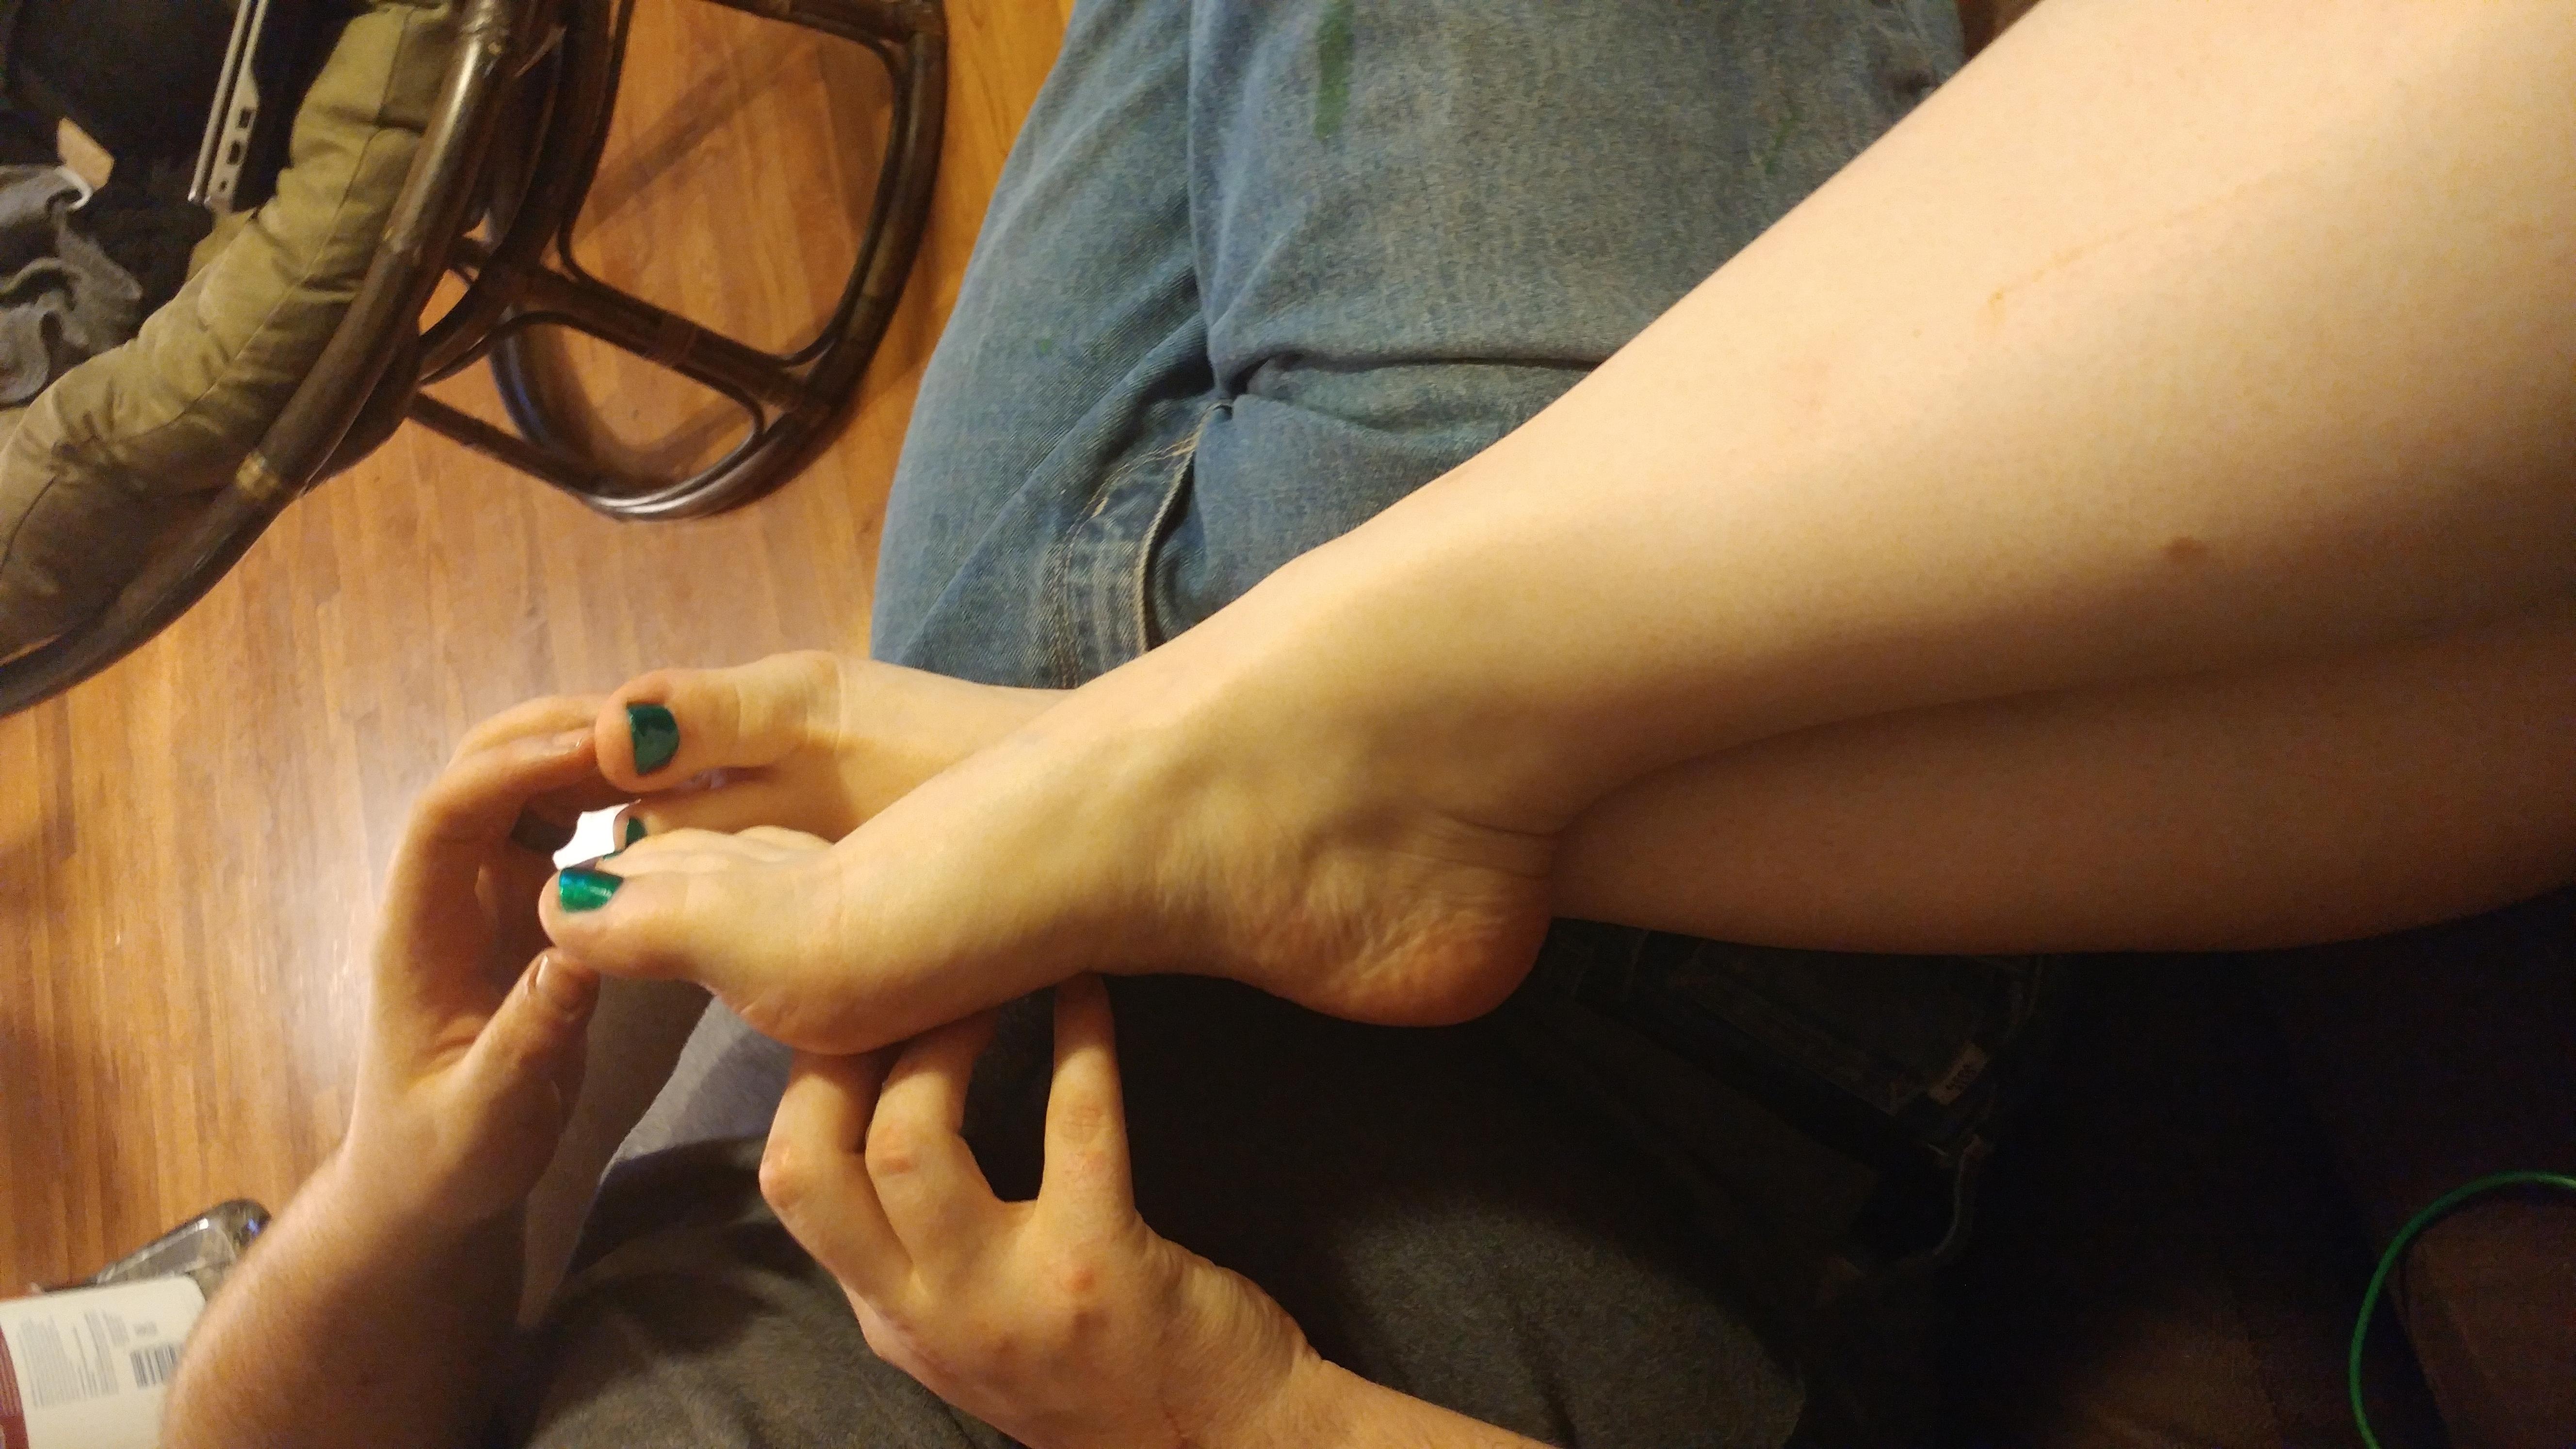 Feet in husband's lap.